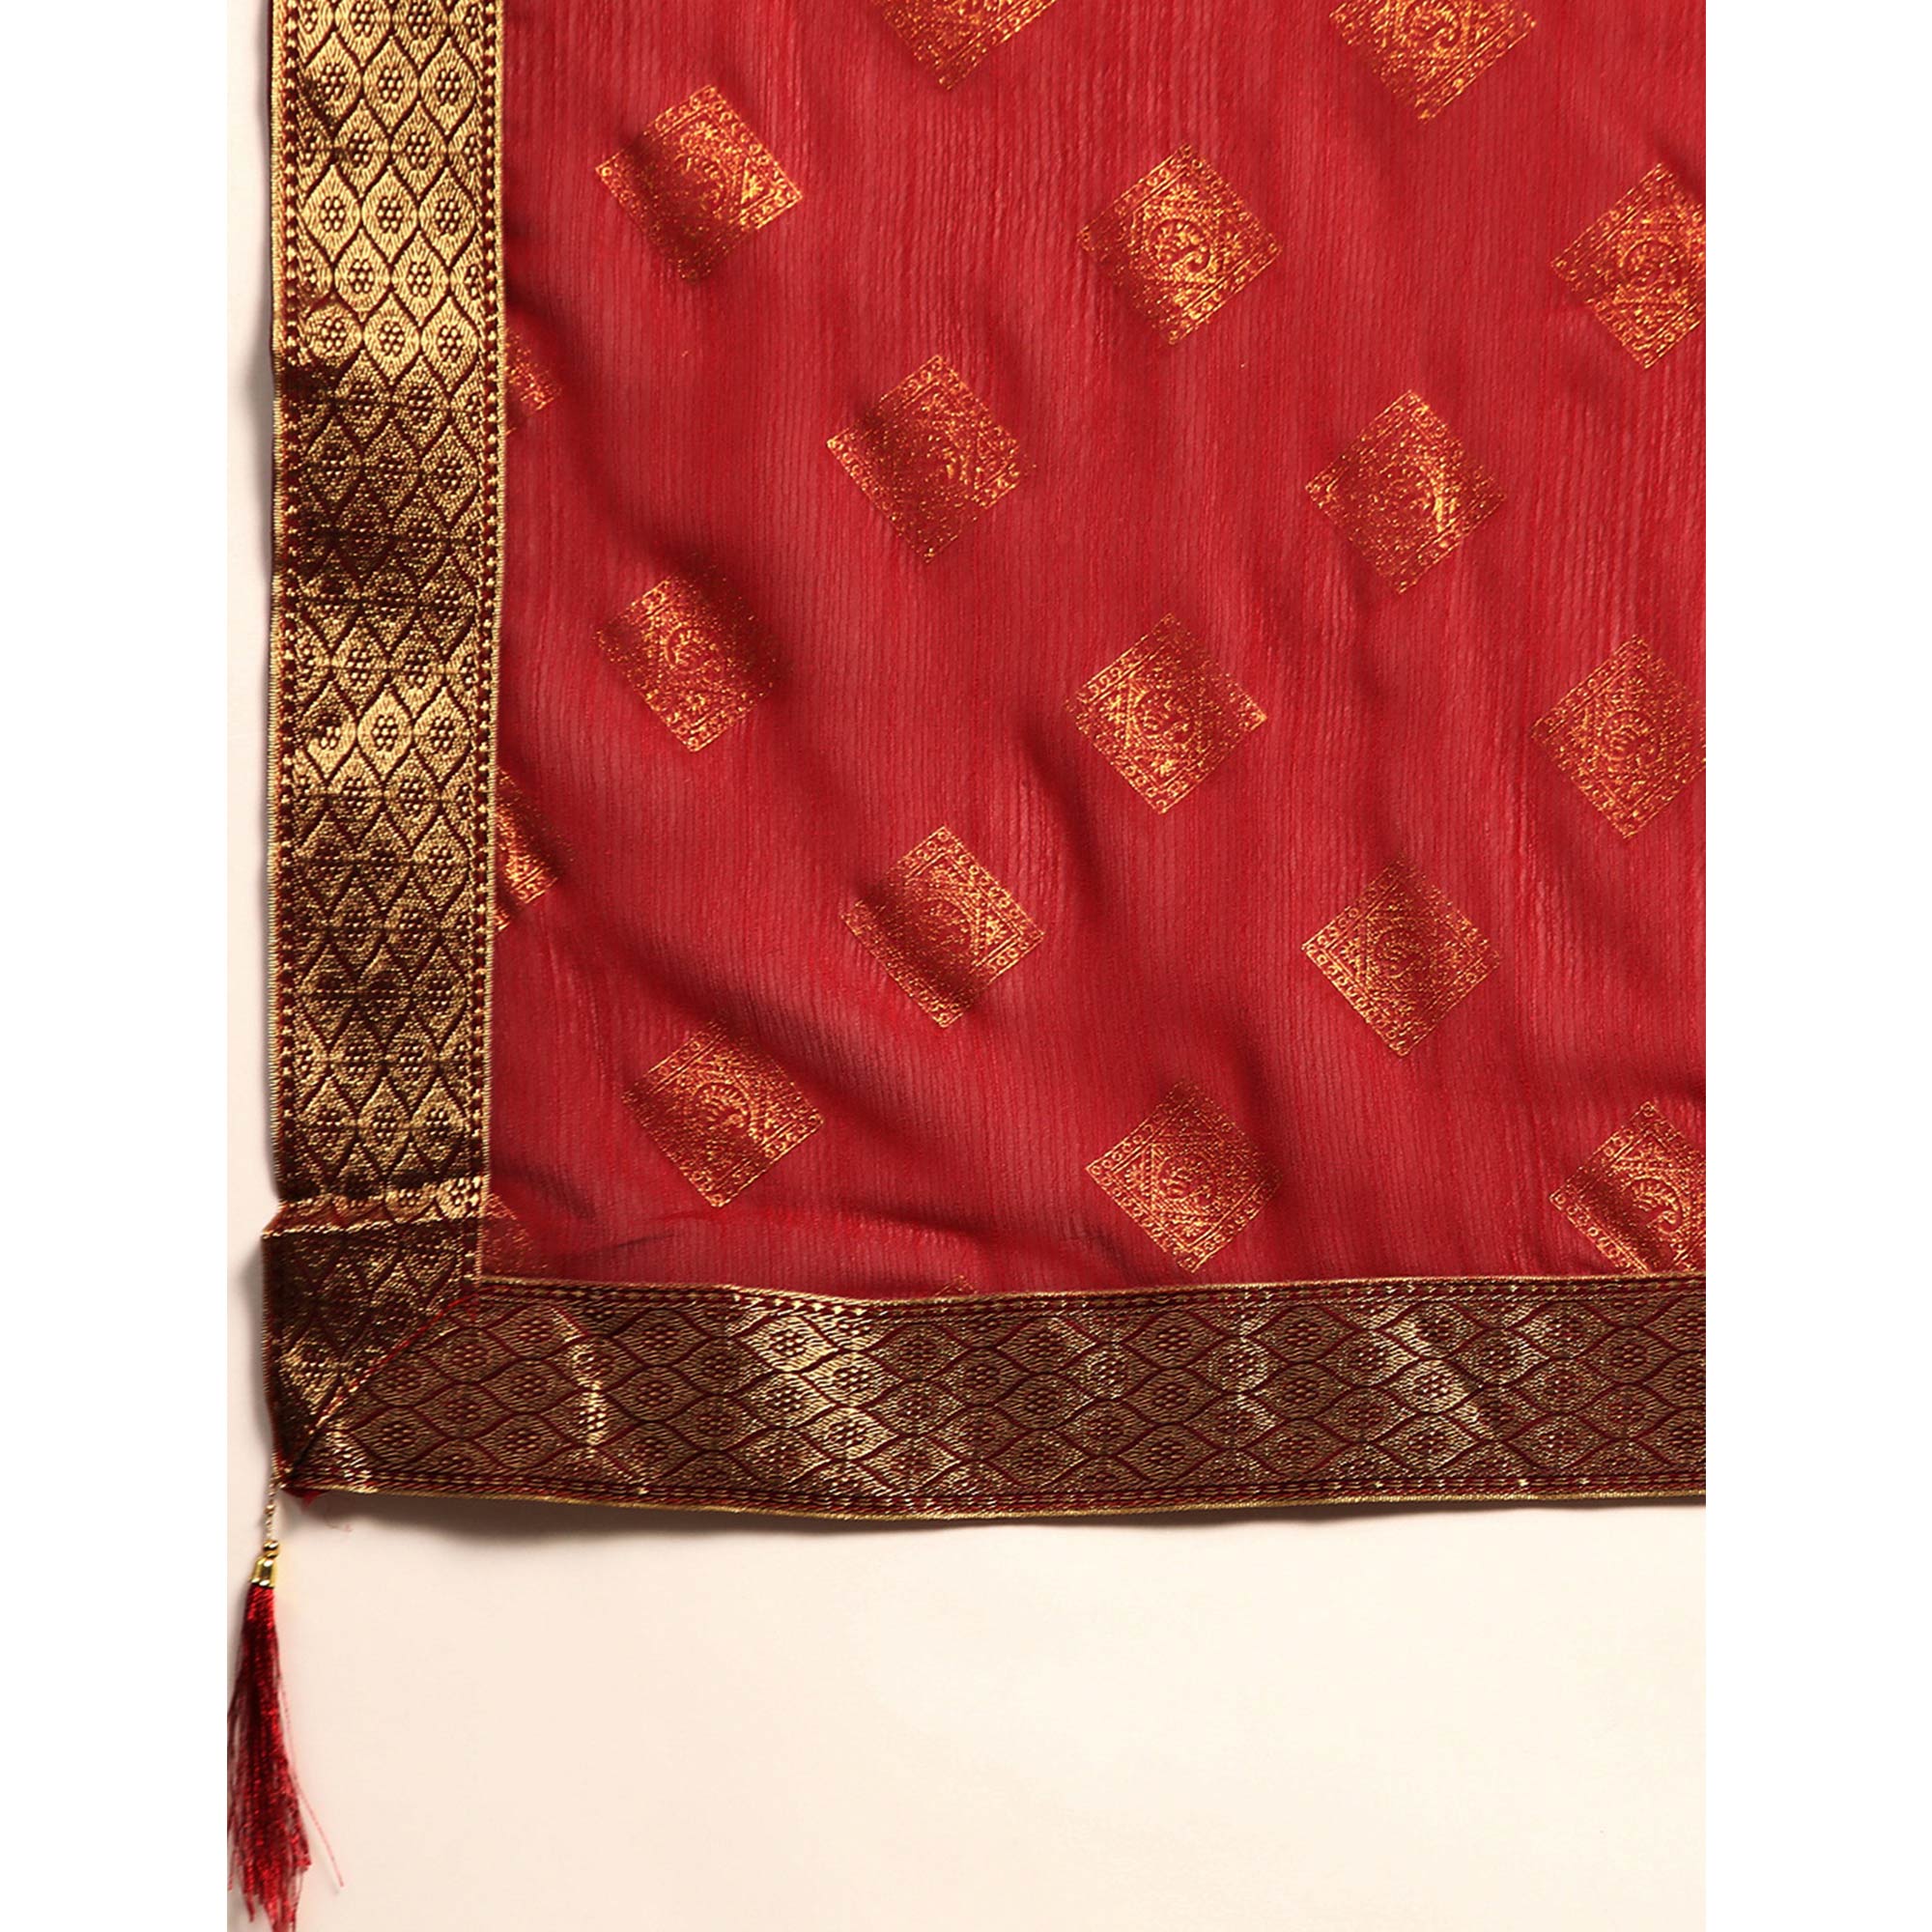 Maroon Foil Printed Chiffon Saree With Tassels